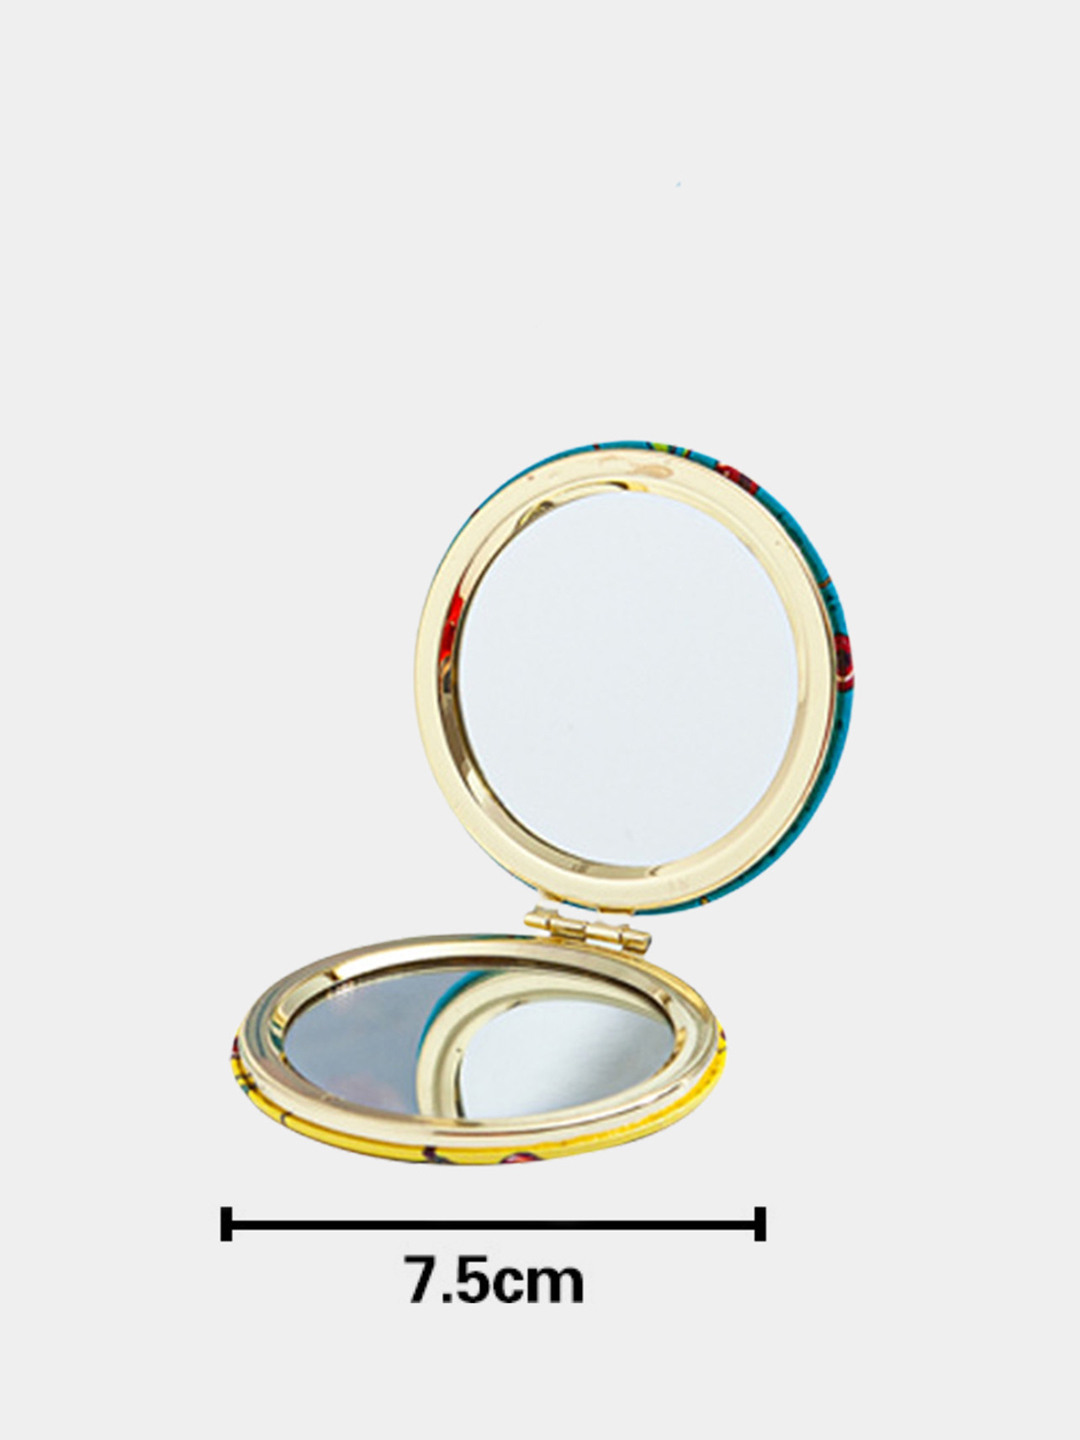 Брендированные зеркальца от компании Фул Моушн